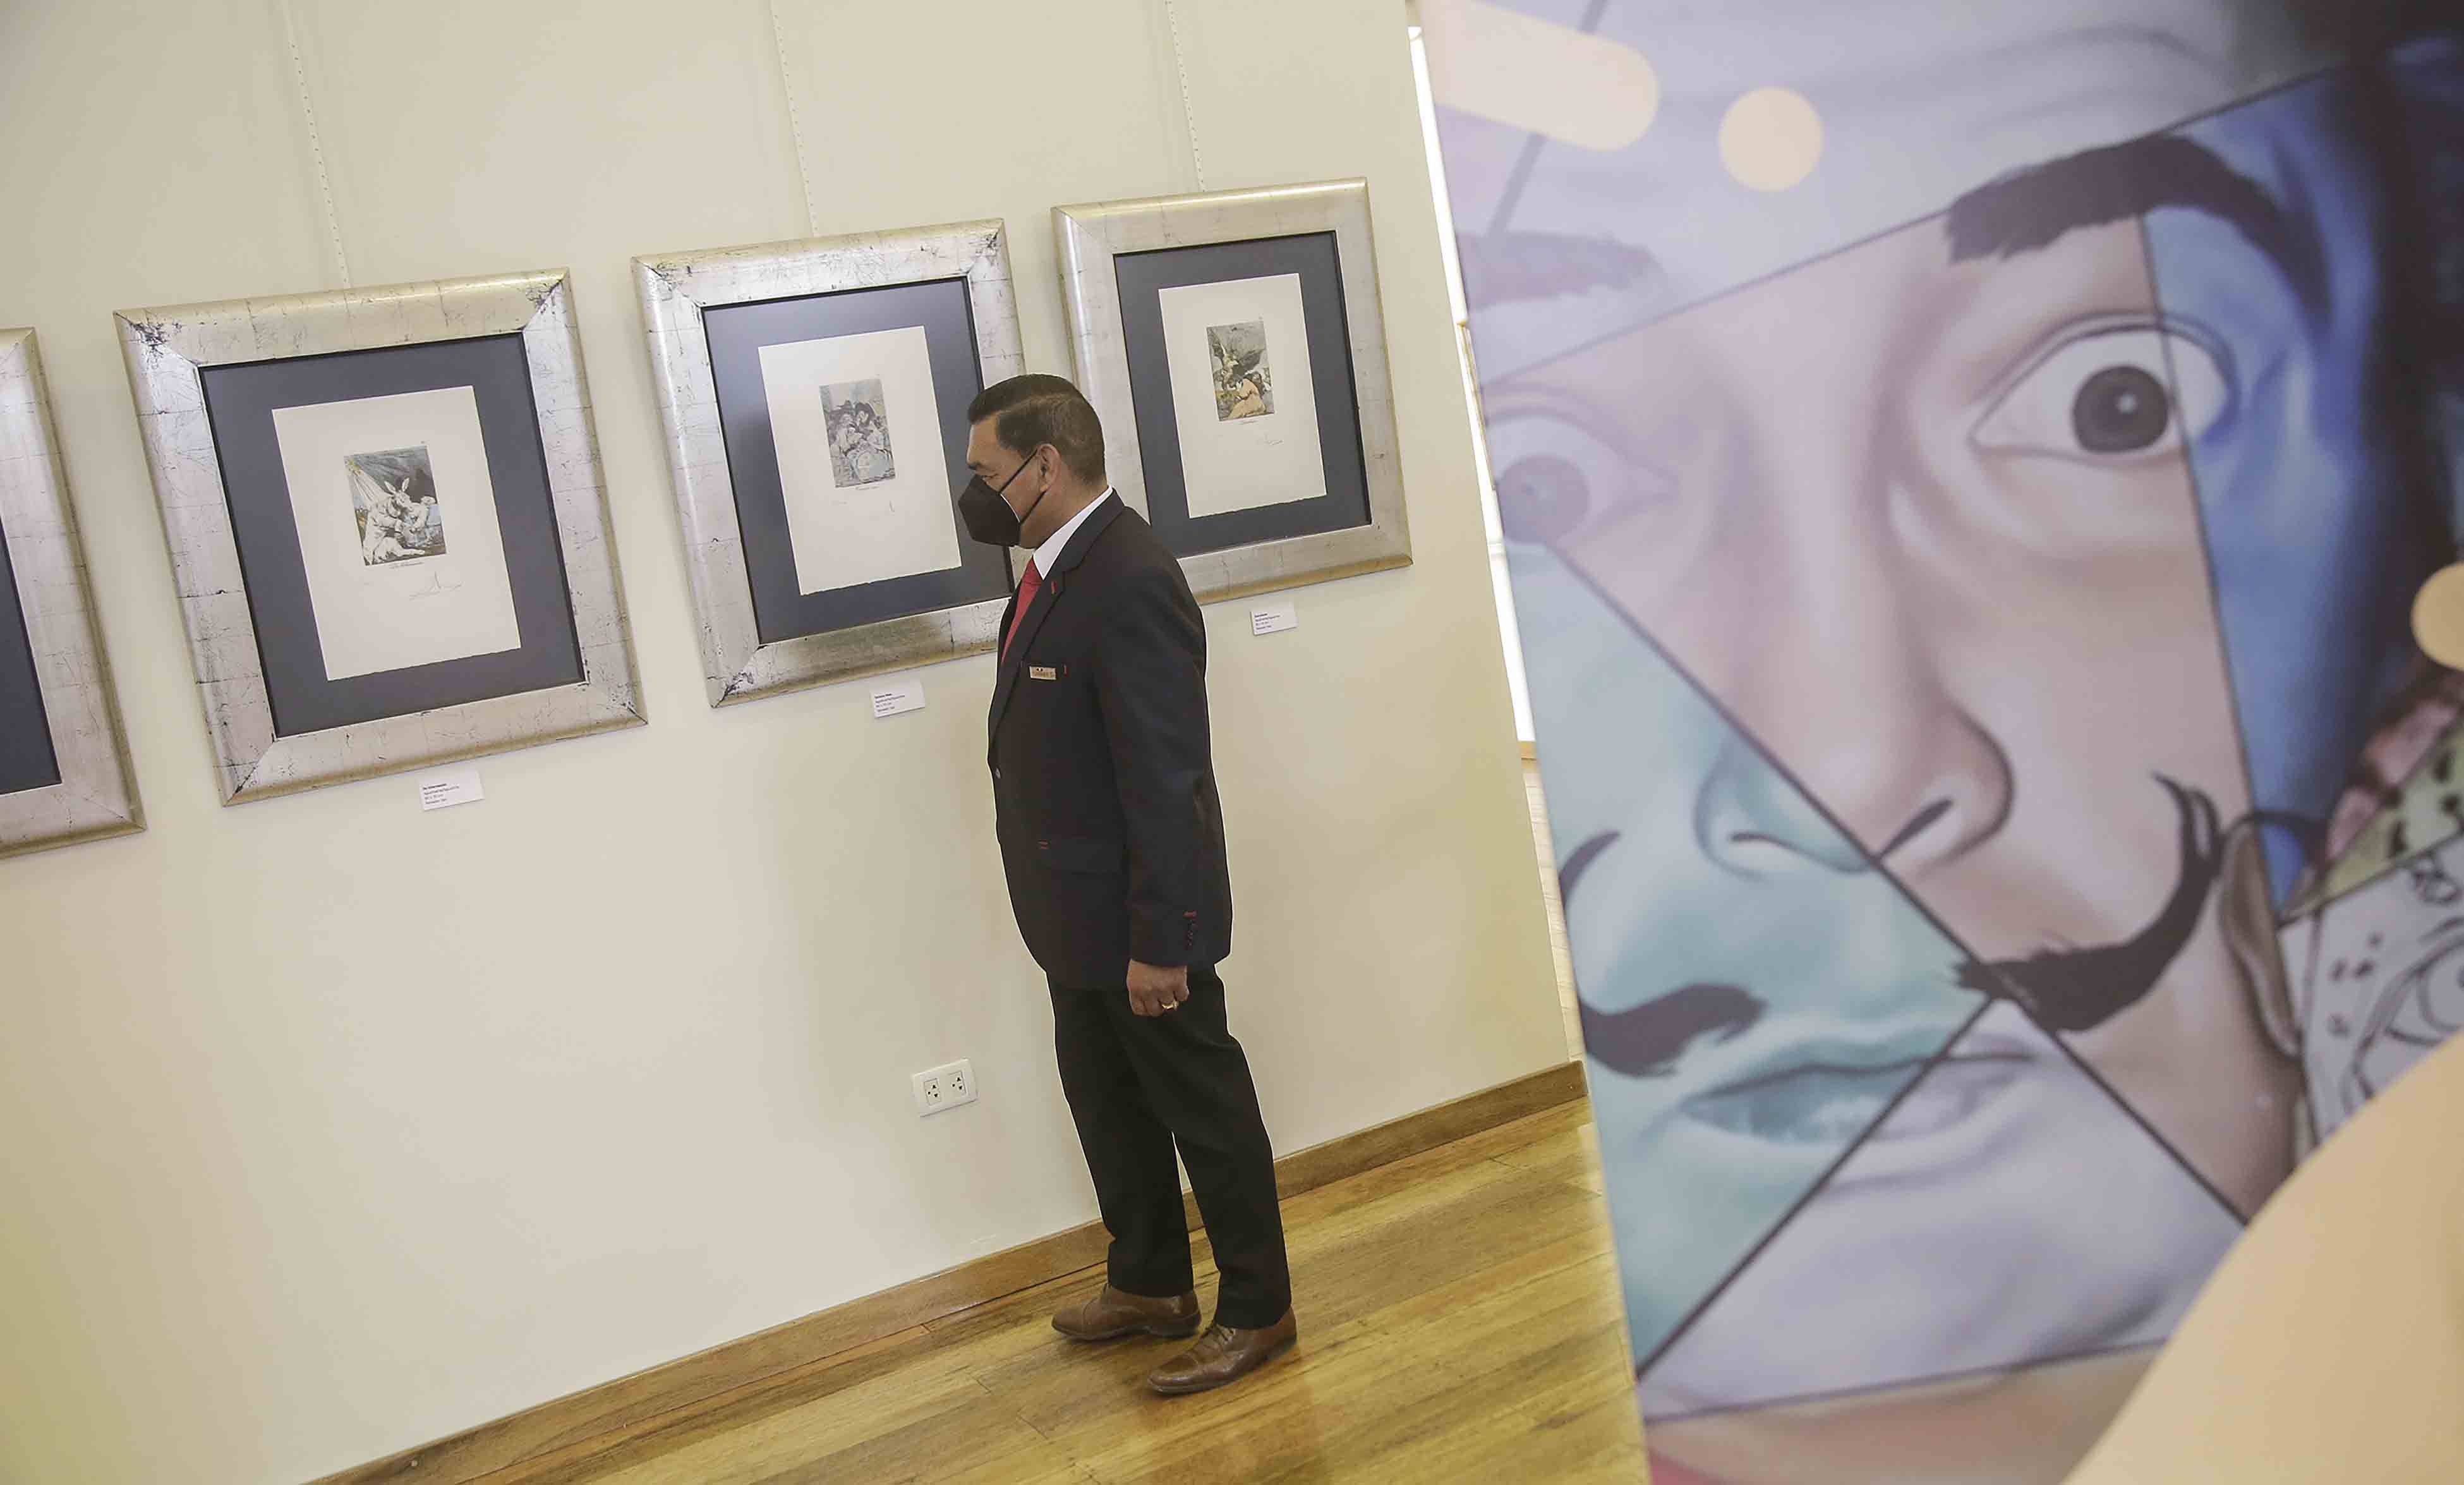 El genio del bigote. Herrera Palma en la exposición de la obra de Dalí sobre Goya que se inaugura este jueves. Foto: Rodrigo Talavera/ La República